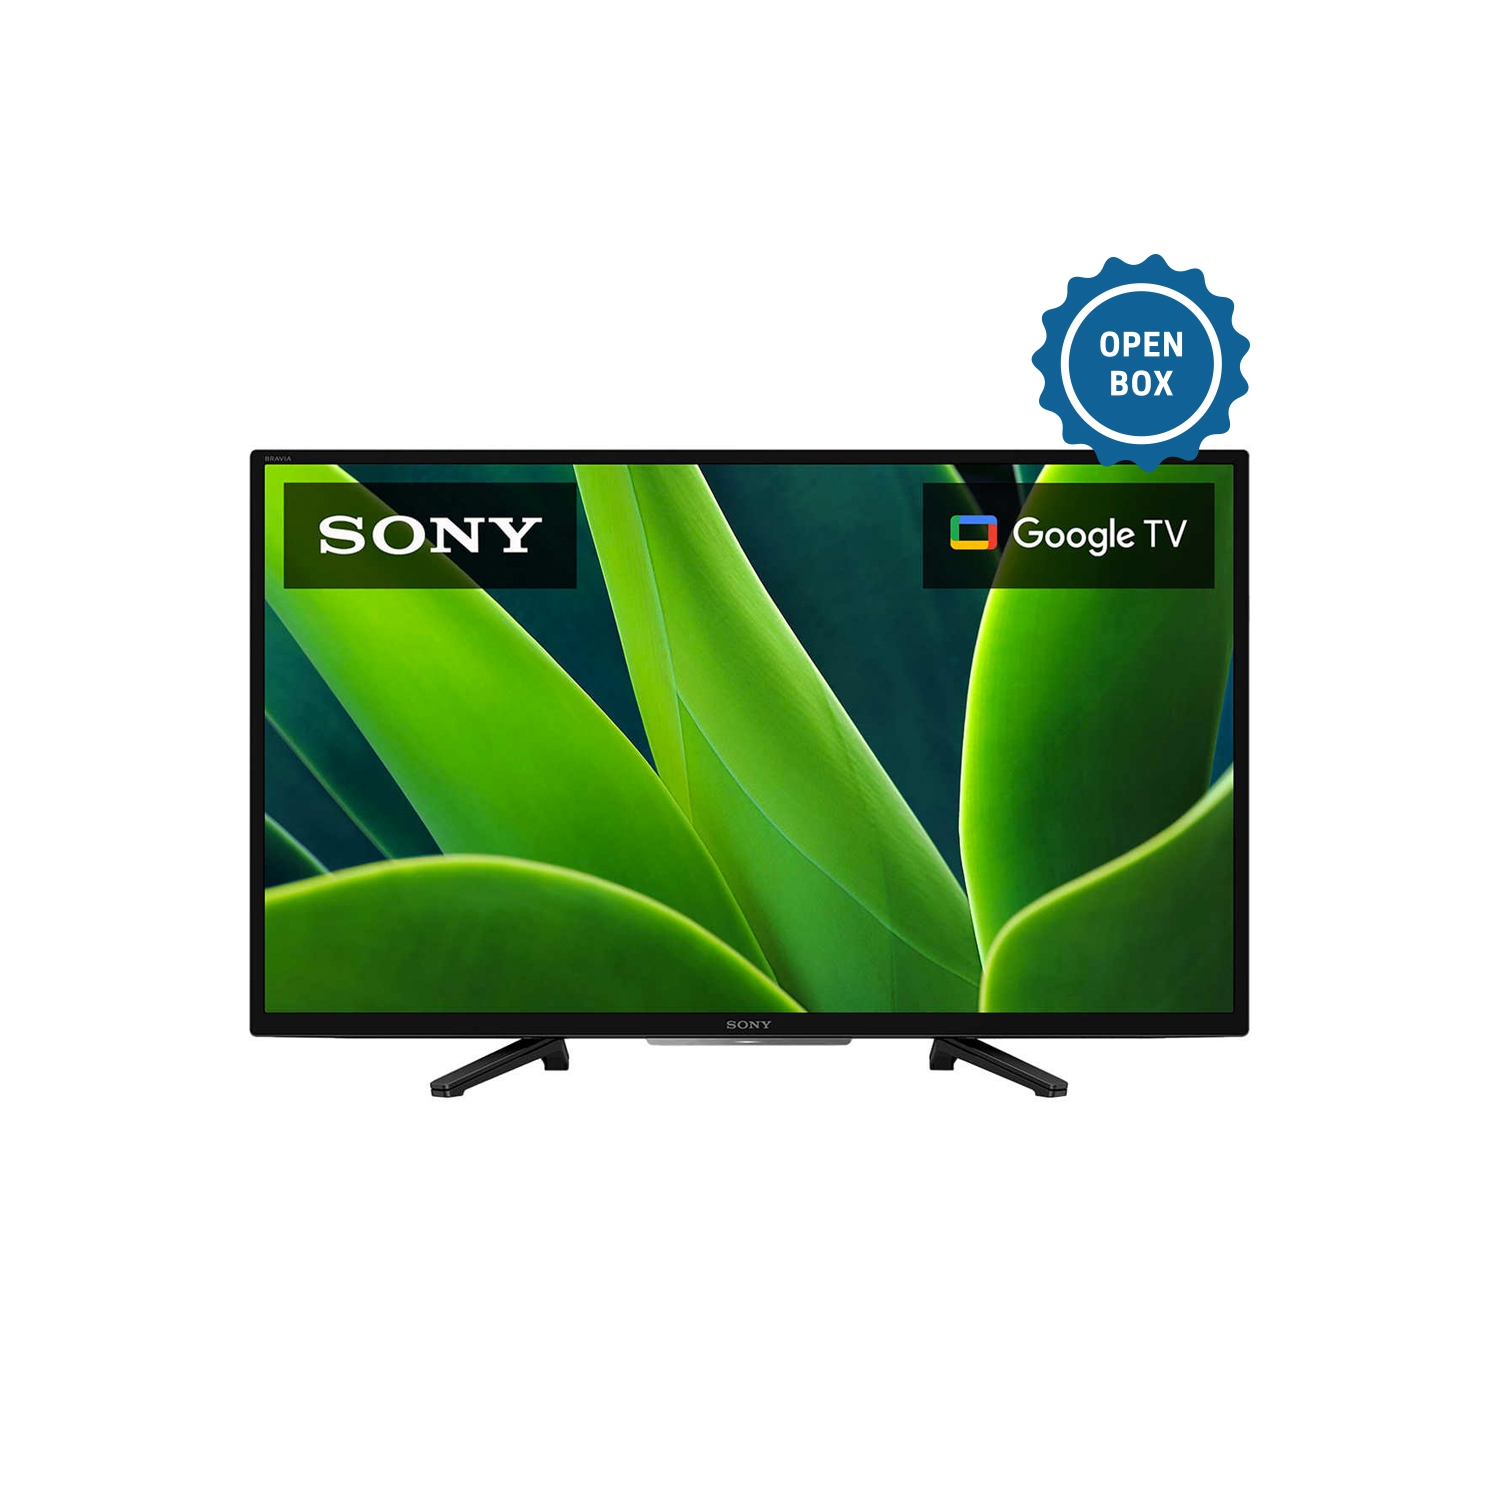 Sony 32" KD32W830K / 720P HD / Smart TV - Open Box